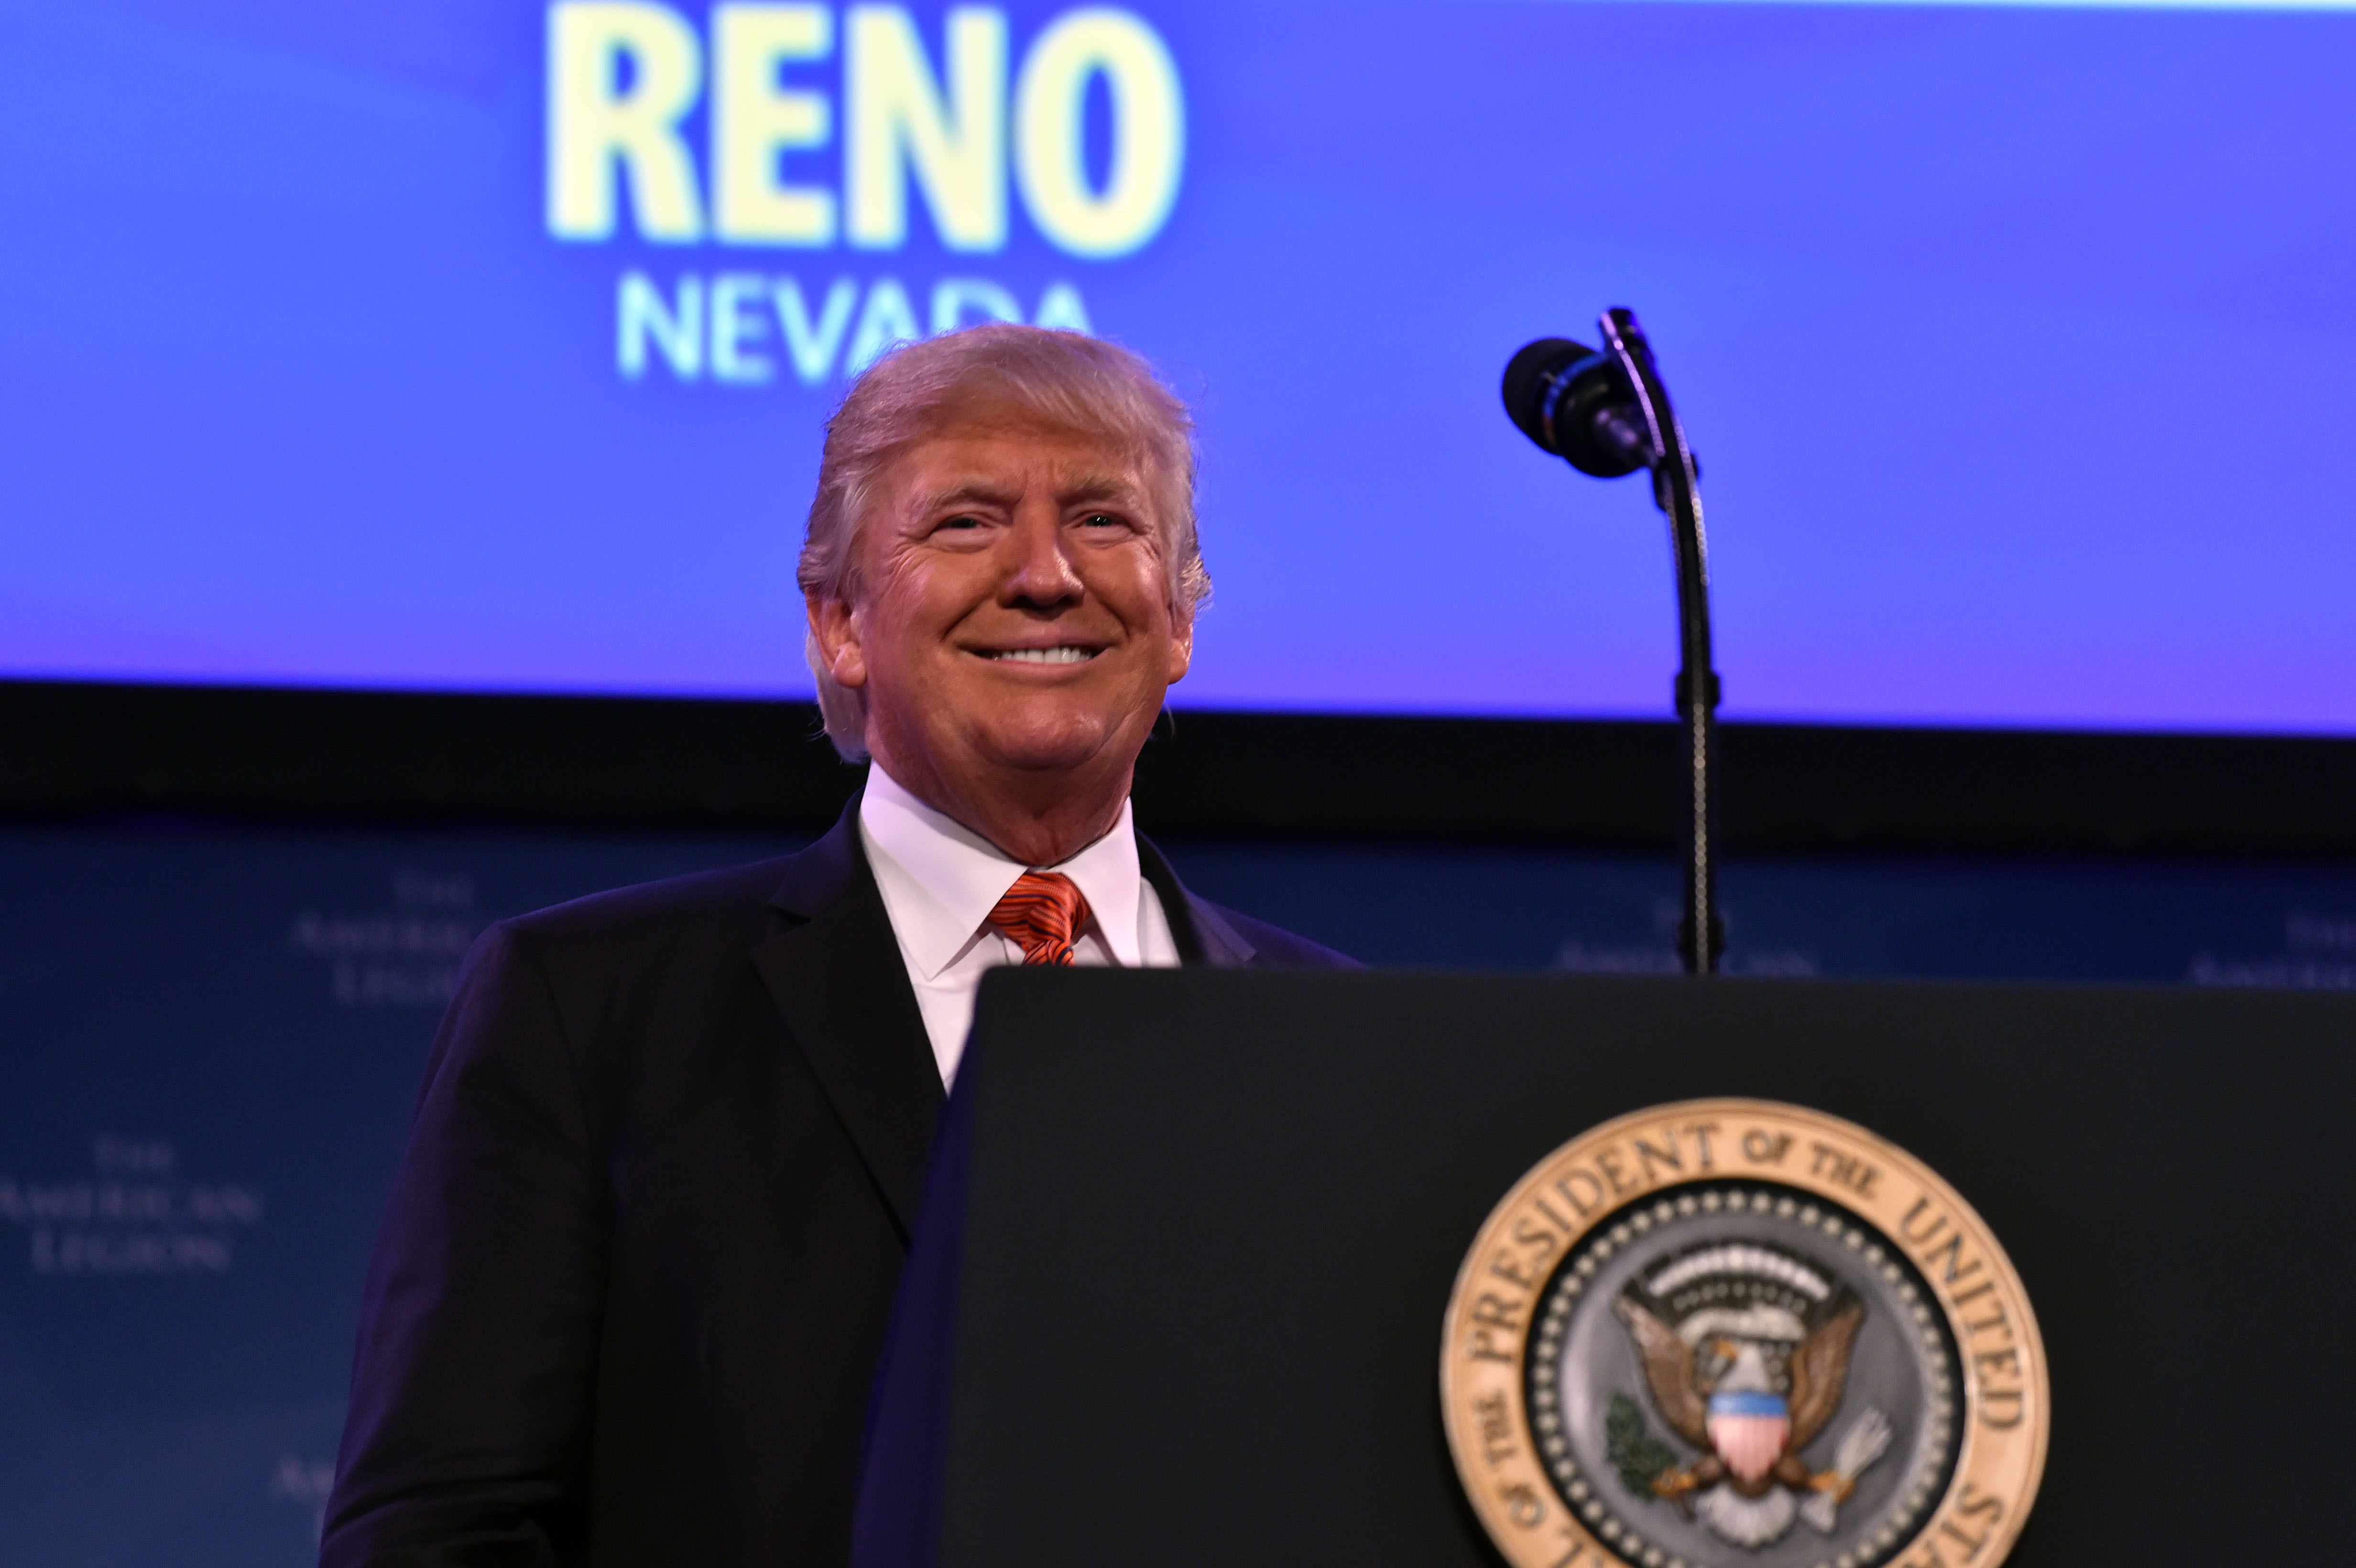 President Trump speaks to veterans in Reno, Nevada